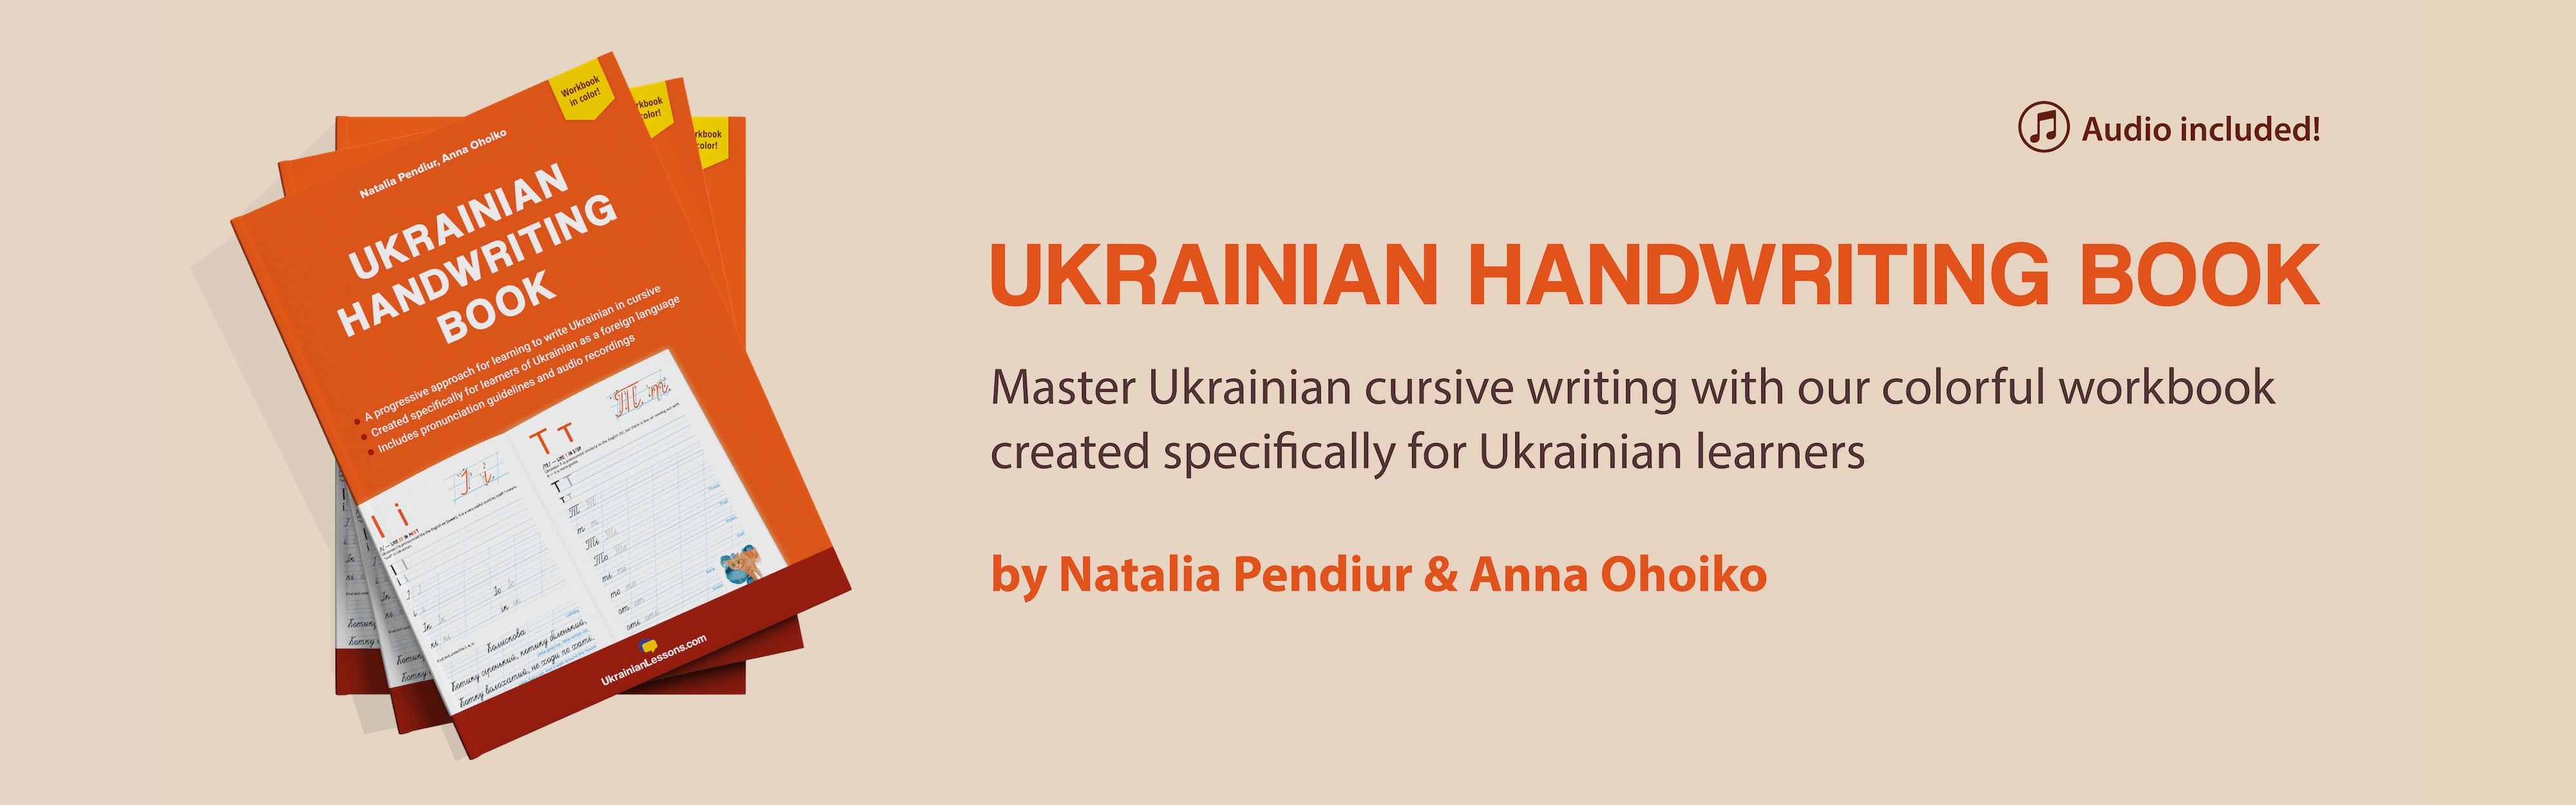 Ukrainian Handwriting Book